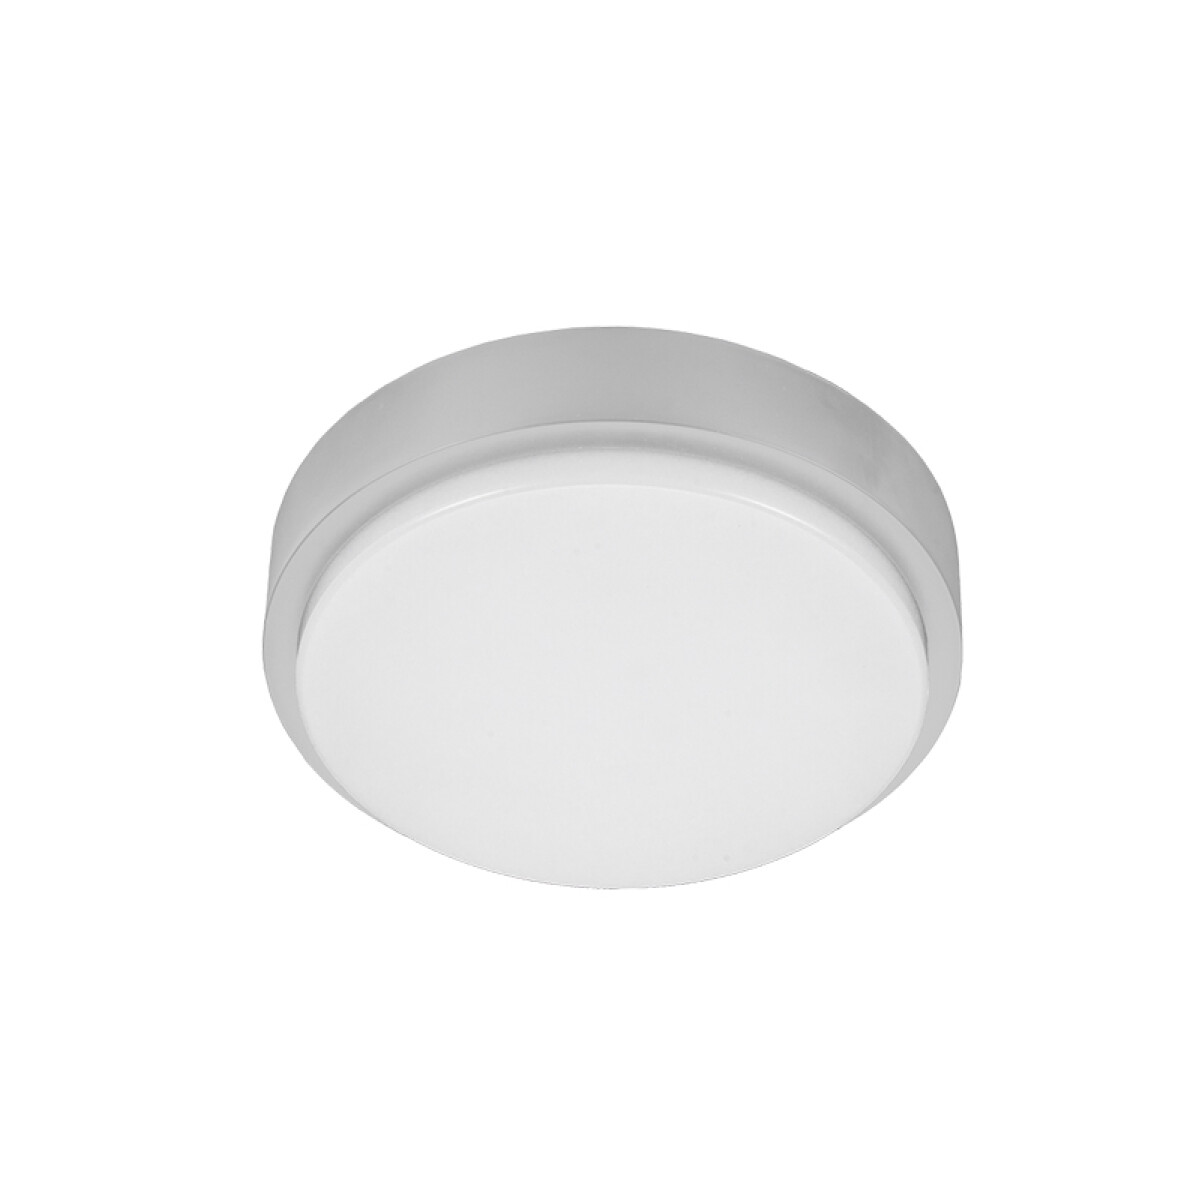 Accesorio tapa de plafon LED blanco Ø255mm (p/AO0075) - AO0080 